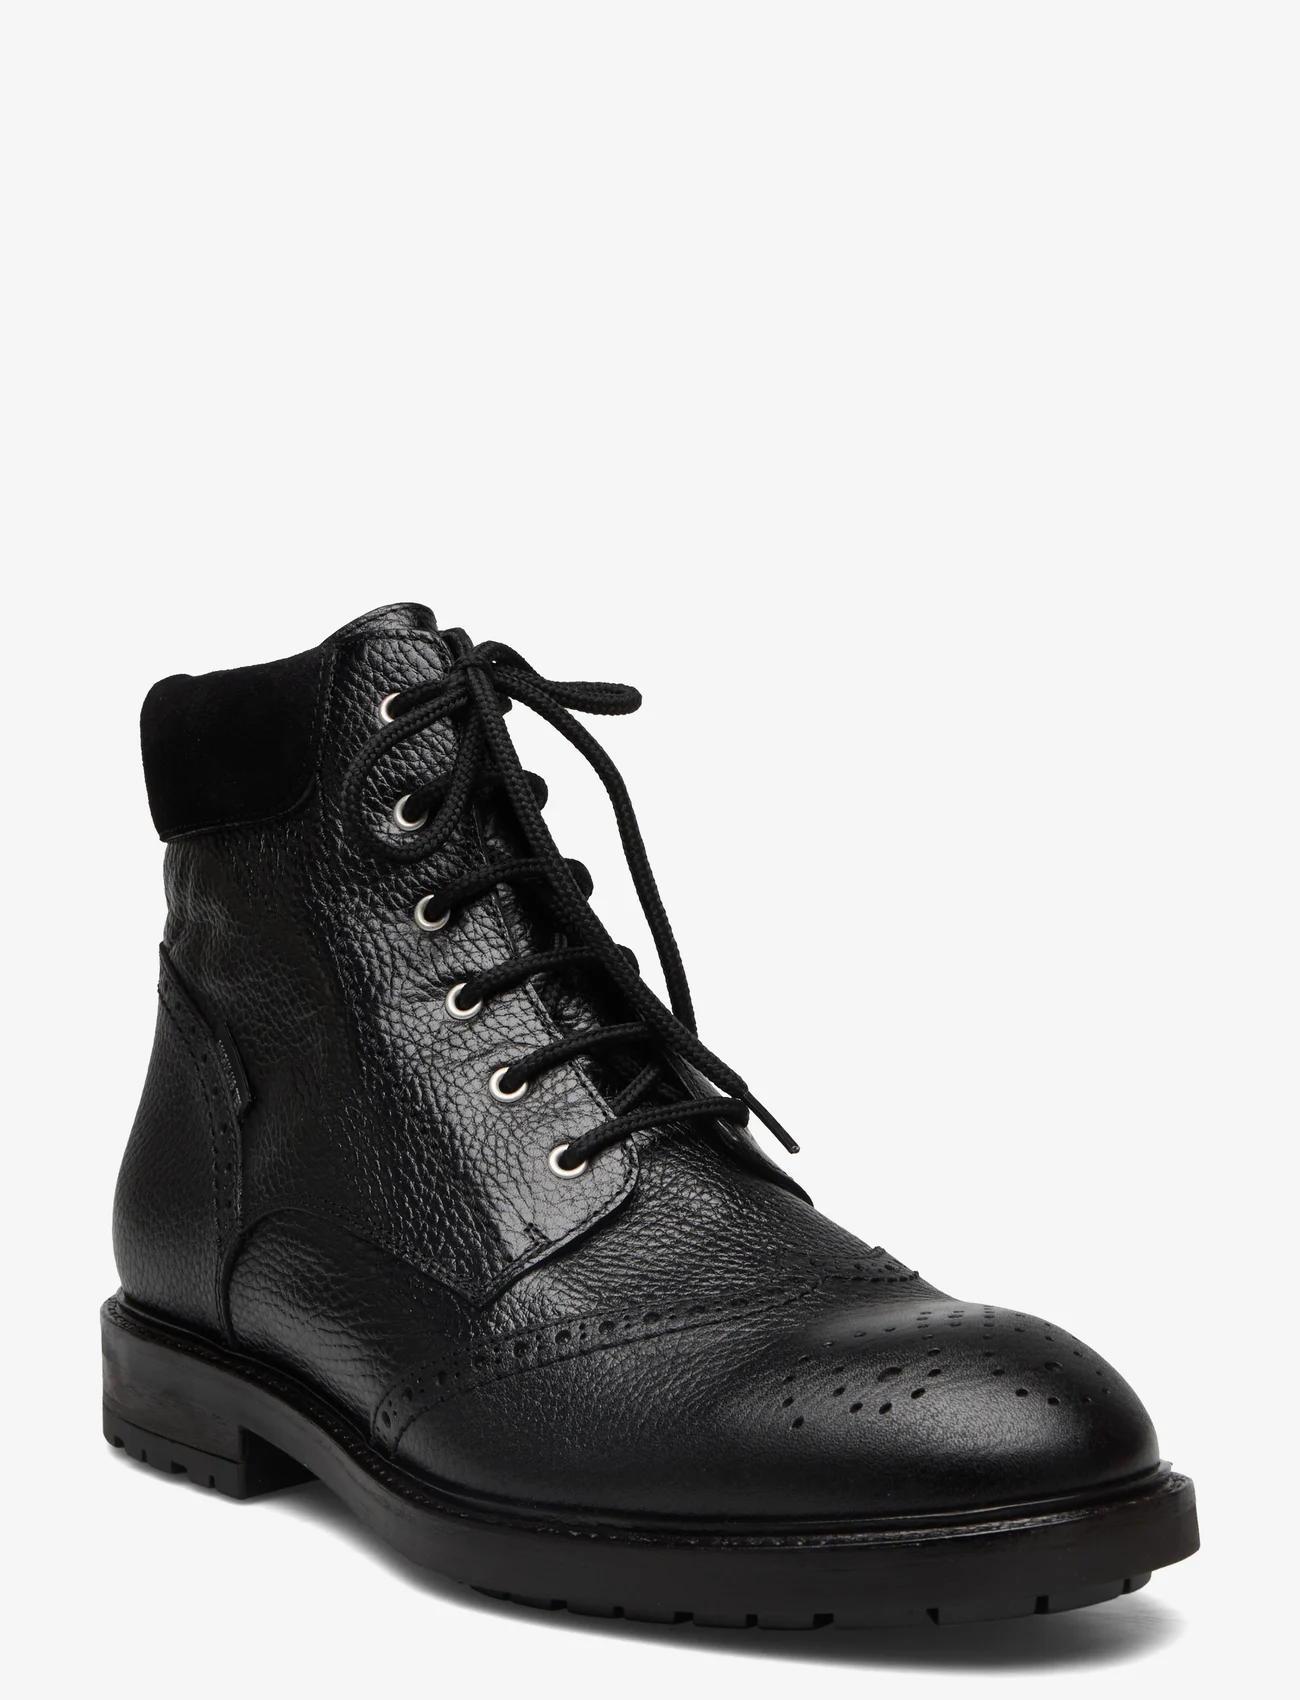 ANGULUS - Shoes - flat - with lace - nauhalliset - 2504/1163 black/black - 0